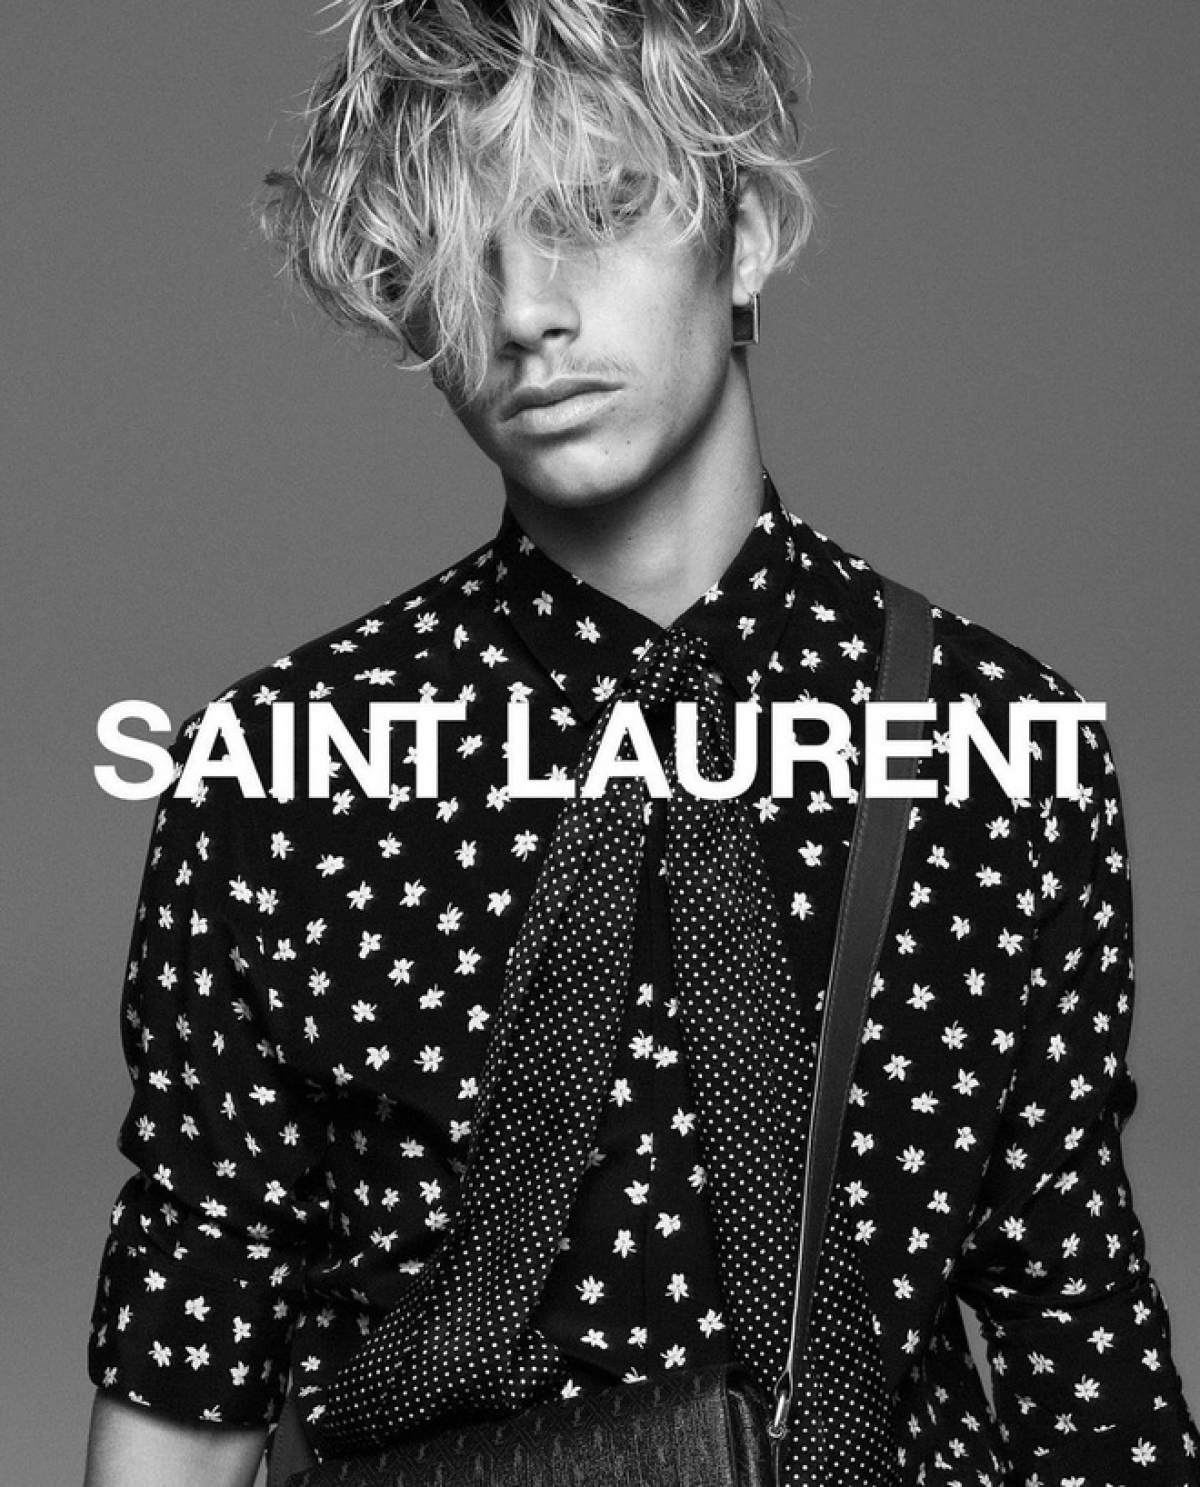 Cậu hai nhà David - Victoria Beckham chính thức trở thành gương mặt đại diện mới của Saint Laurent